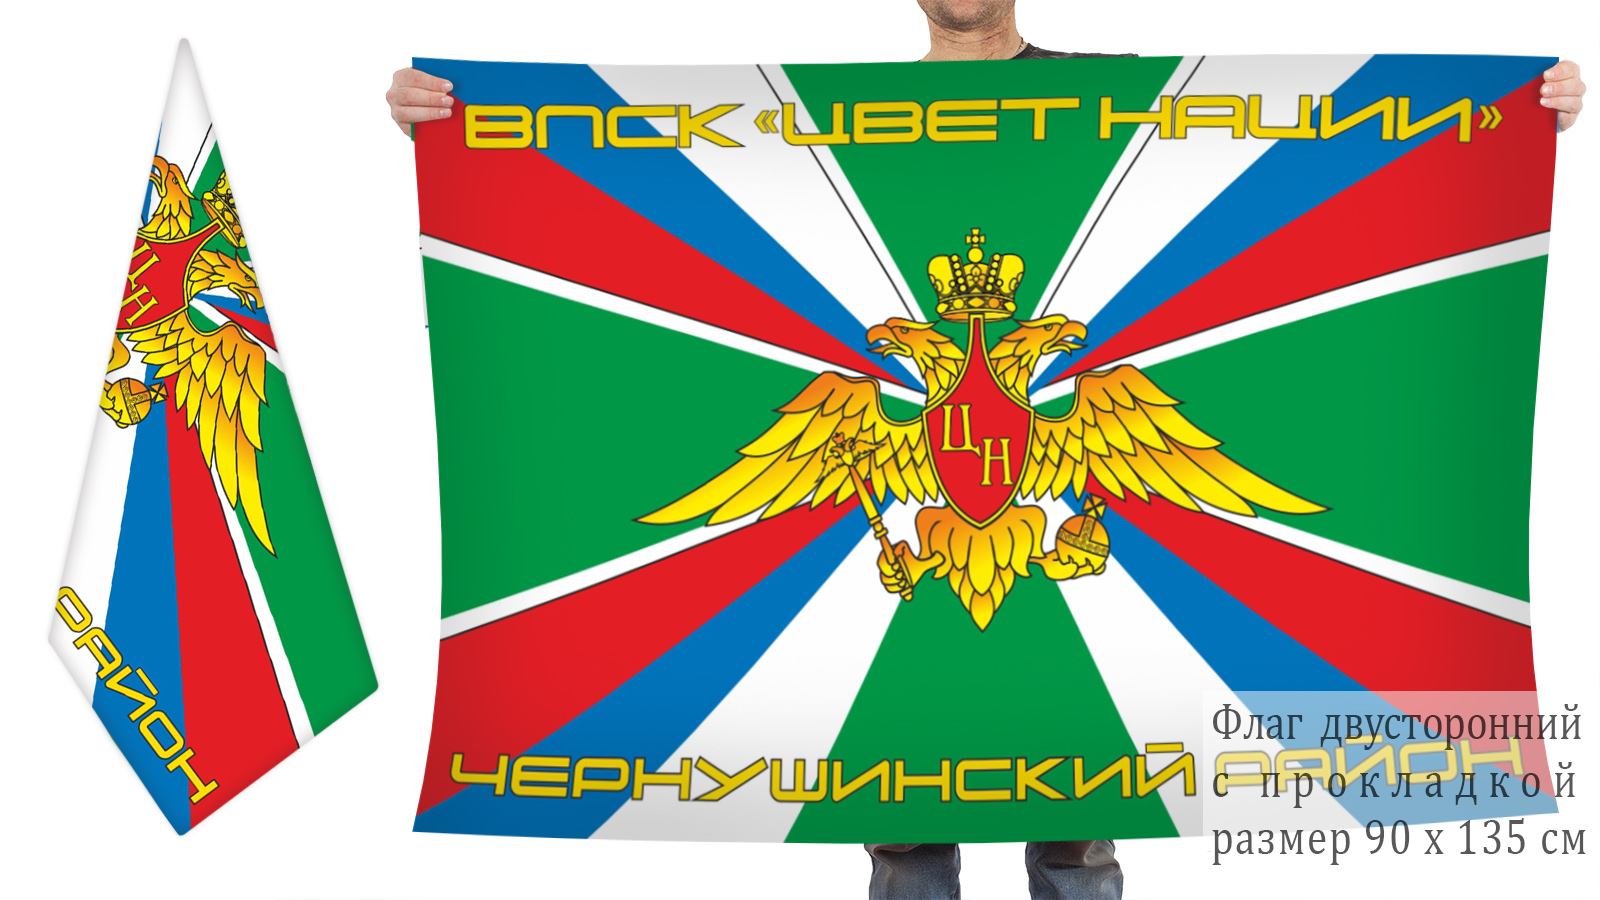 Двусторонний флаг ВПСК "Цвет нации"